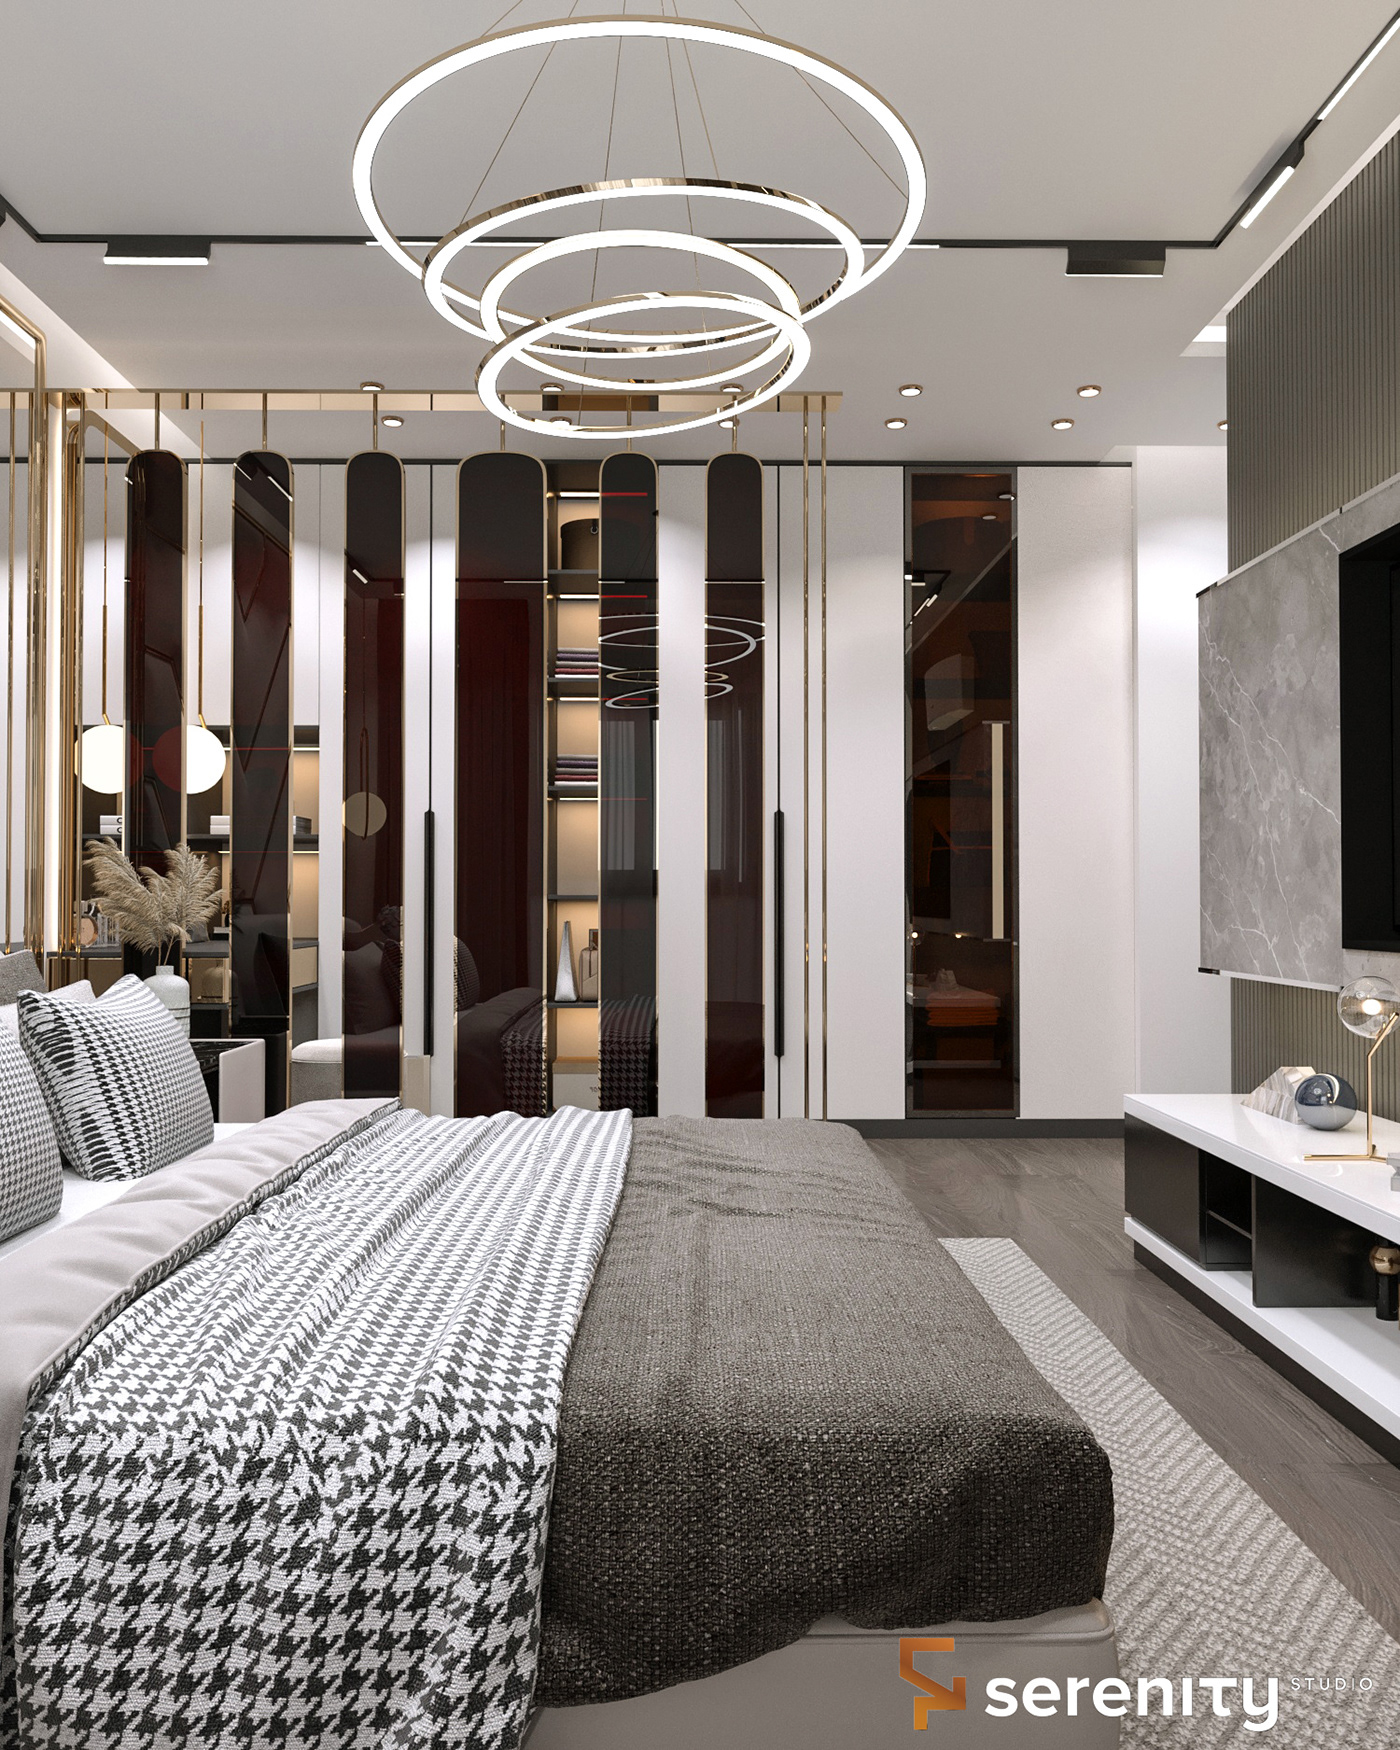 3ds max architecture corona interior design  master bedroom modern visualization